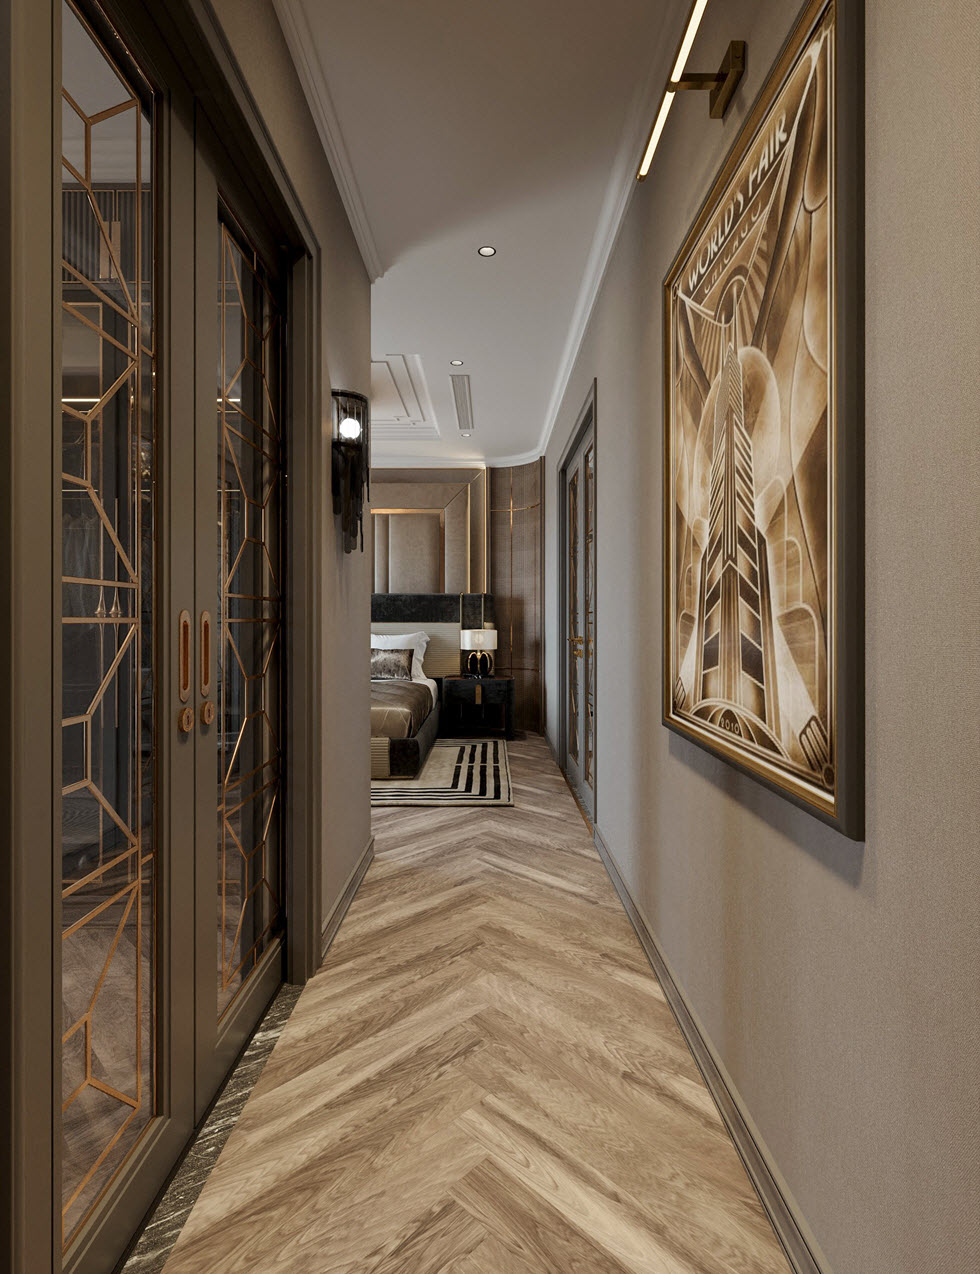 Tranh tường phong cách Luxury được bố trí khéo léo ở khu vực hành lang.